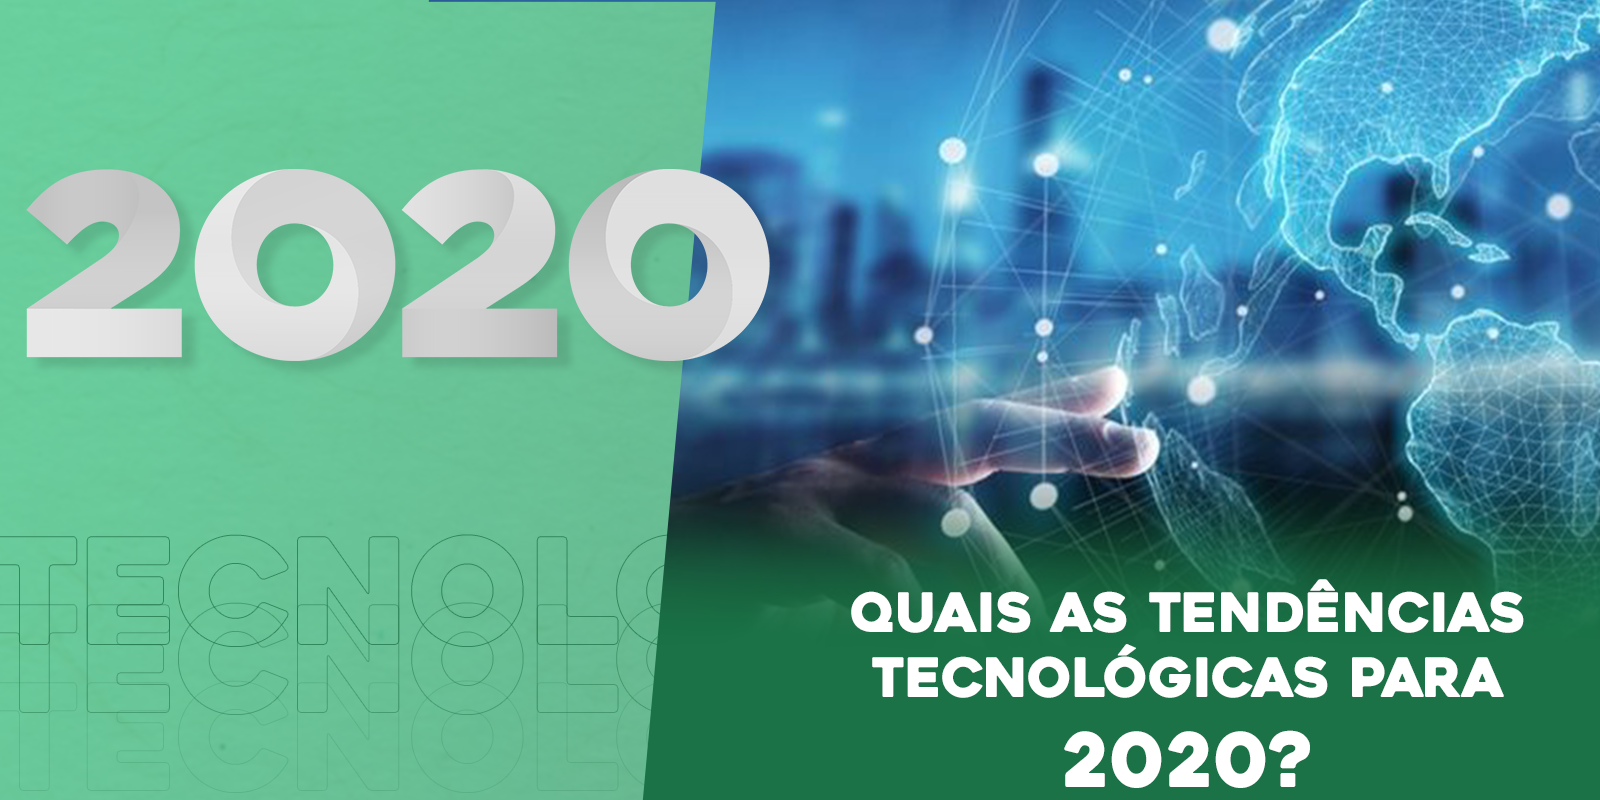 Tendências tecnológicas para o ano de 2020